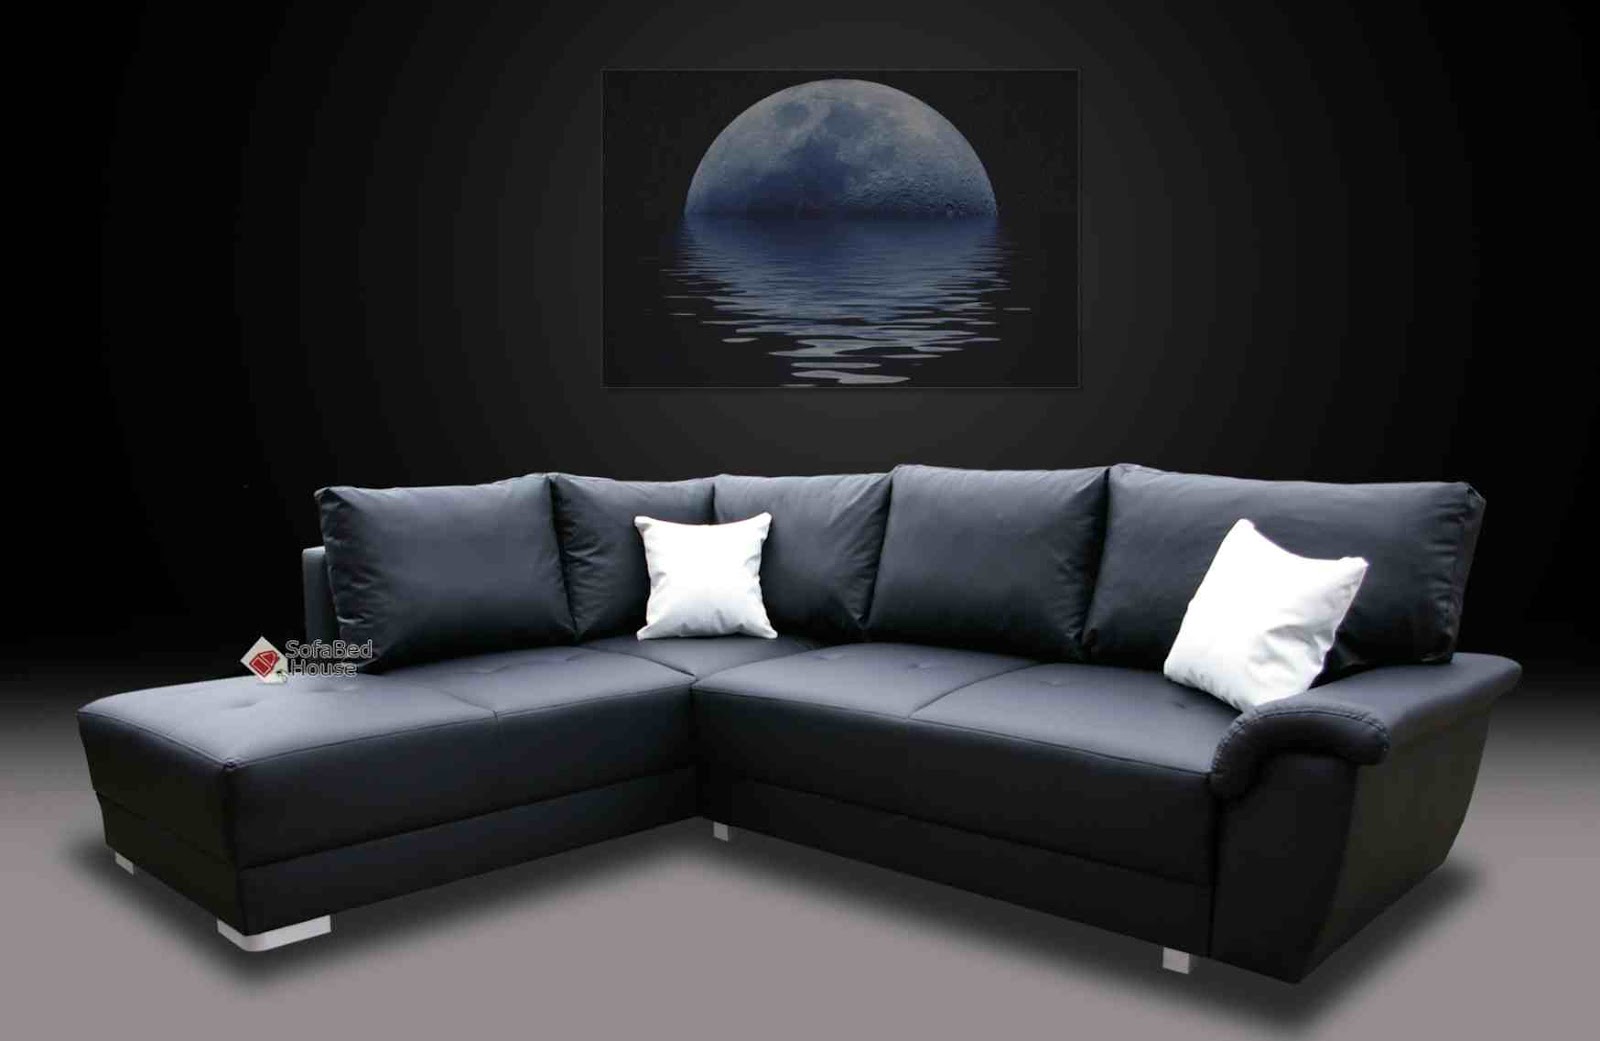  Contoh  Desain Sofa  Ruang  Tamu  Minimalis Kecil   Joelnicolas